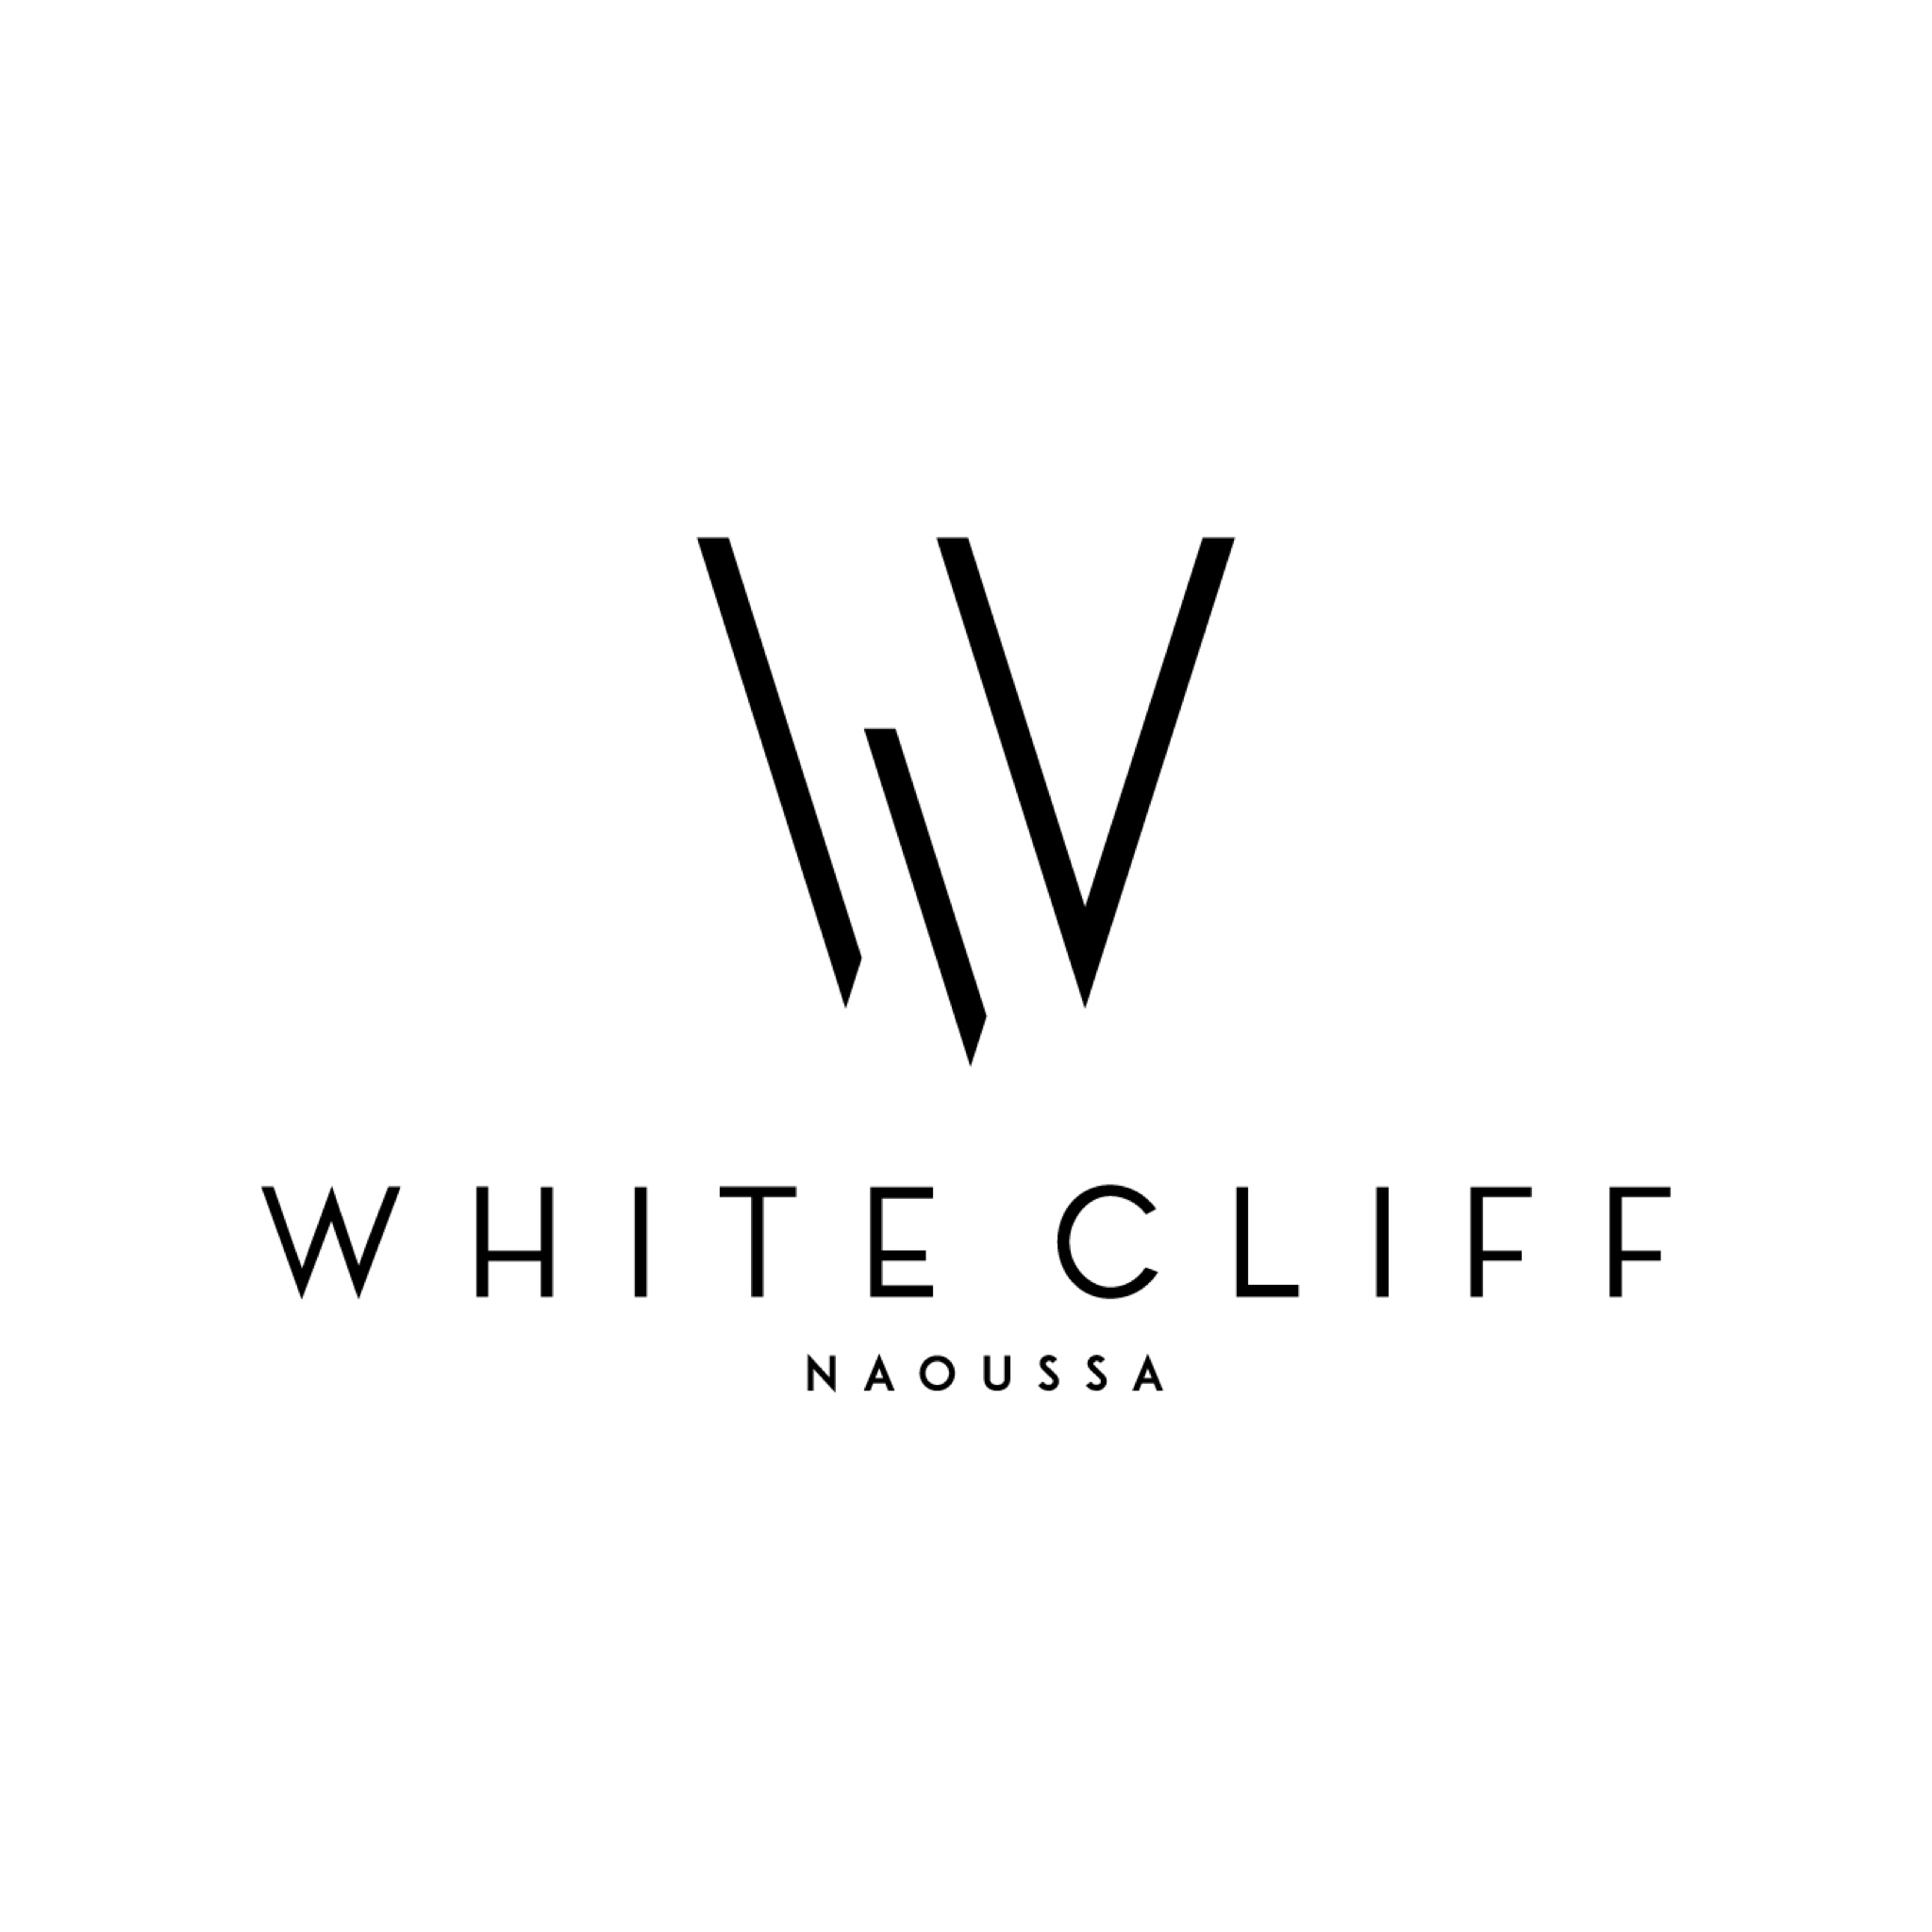 White cliff